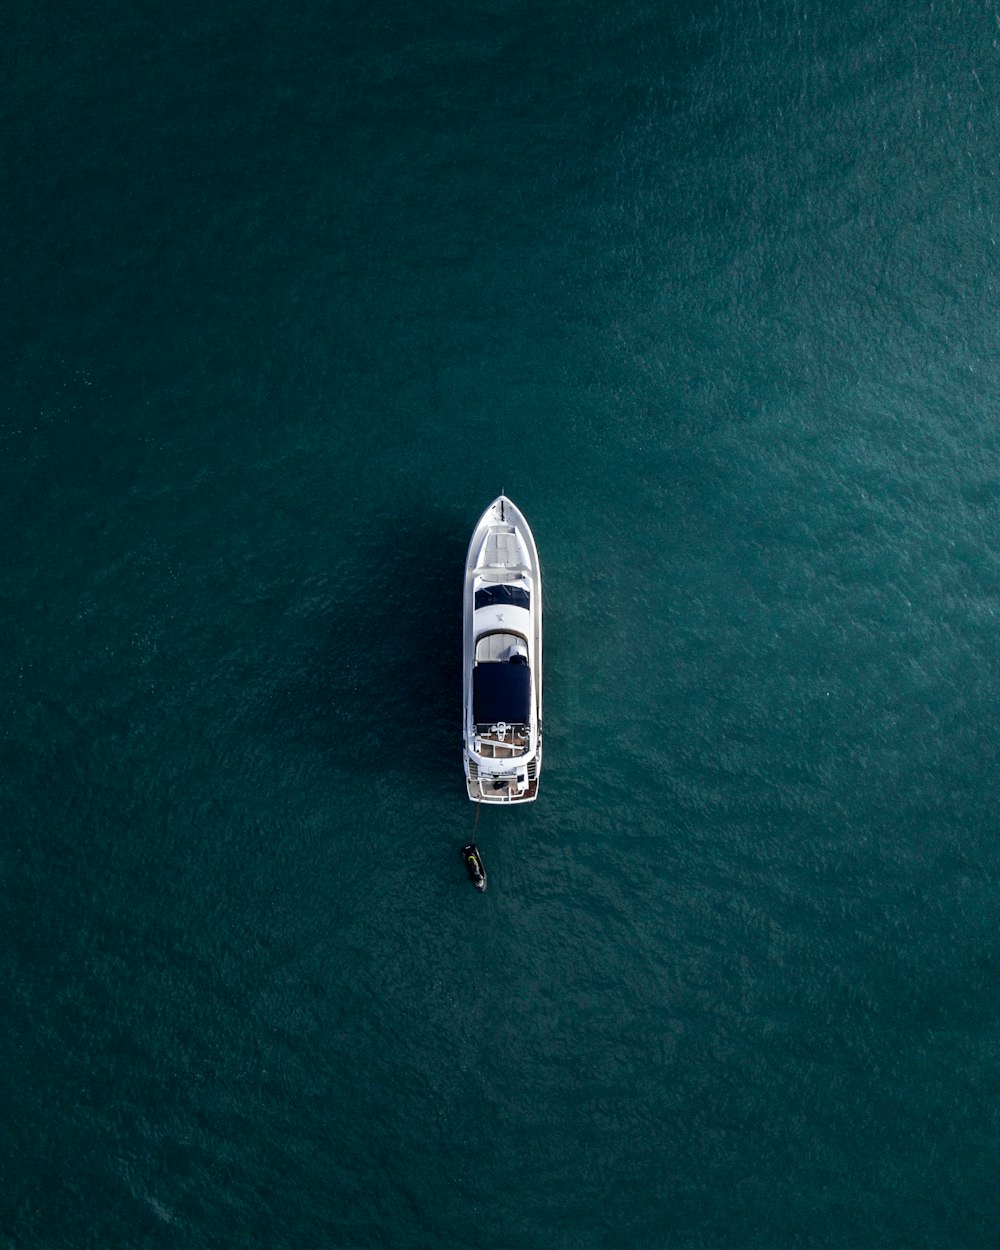 Fotografía aérea de yate blanco en aguas tranquilas.